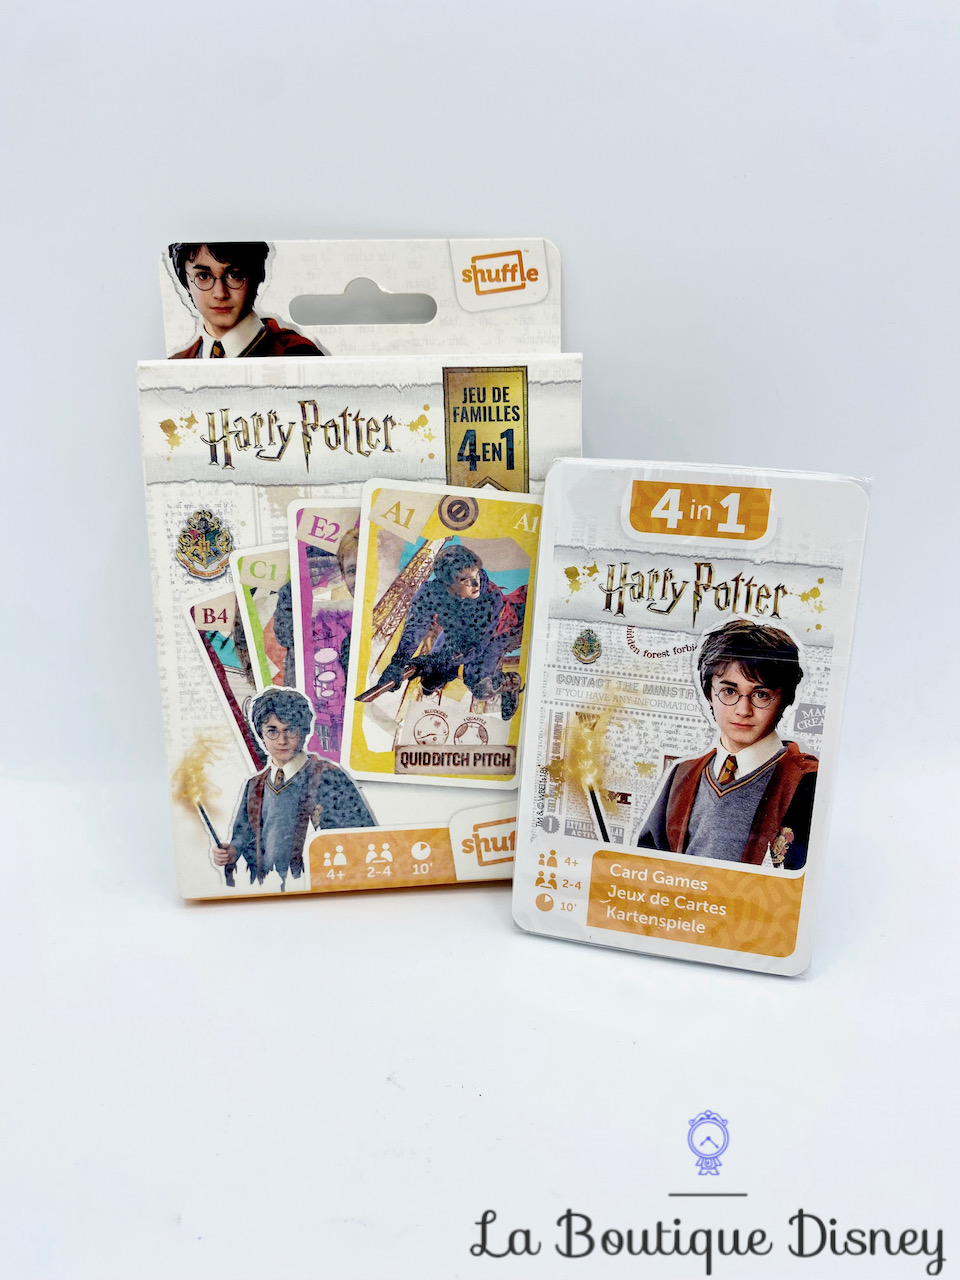 Jeux de cartes Jeu de Familles 4 en 1 Harry Potter Shuffle